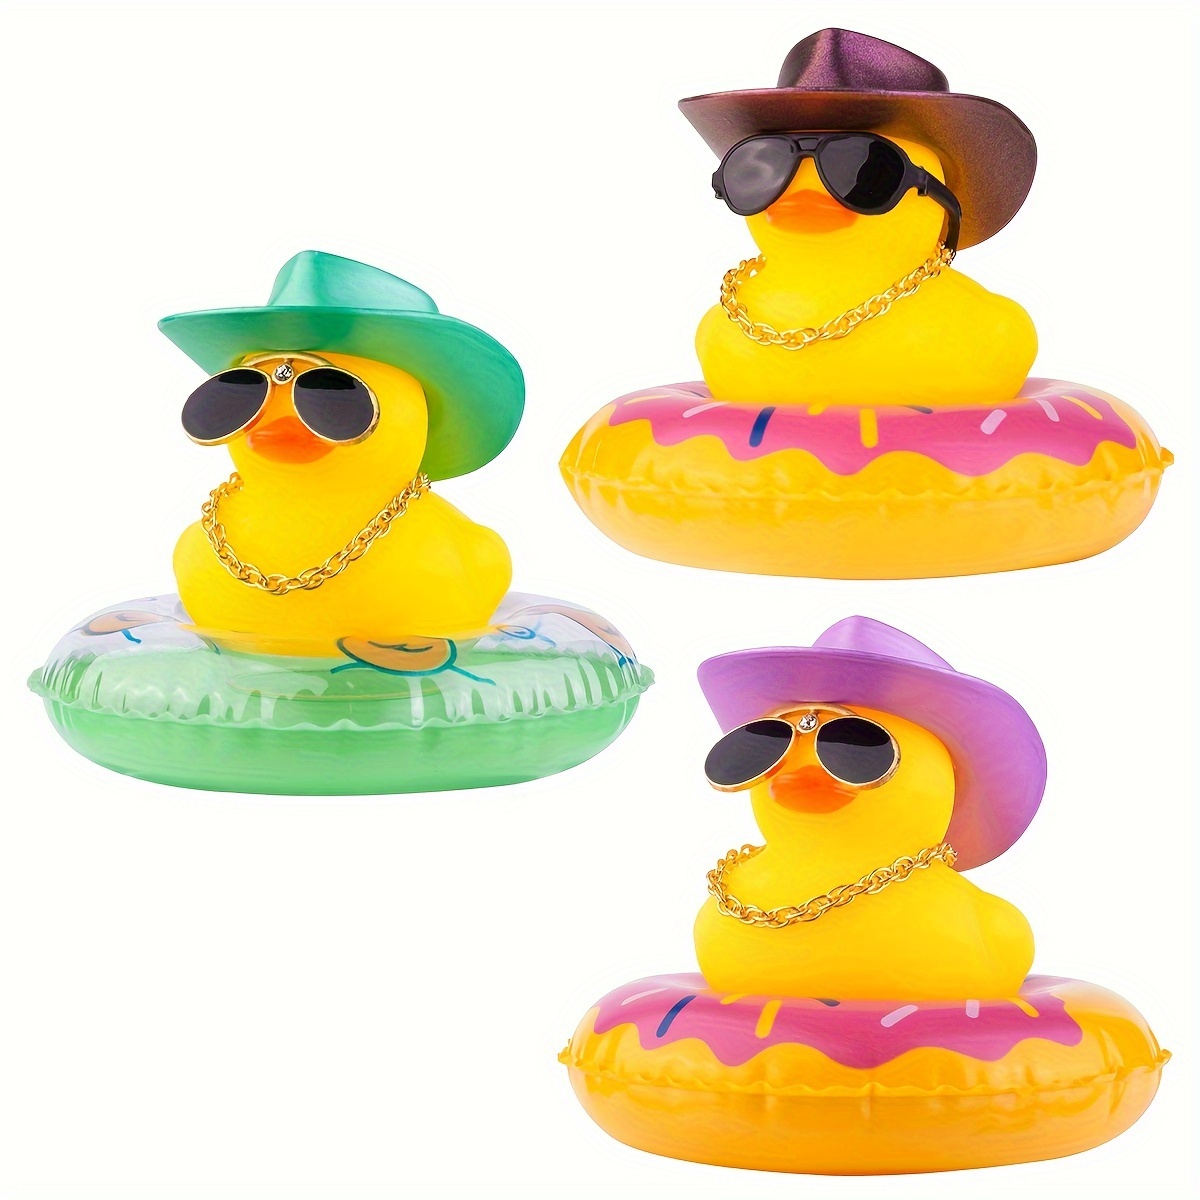 Ente Auto Ornamente gelbe Ente Auto Armaturen brett Dekorationen mit  Sonnenbrille, Schwimm ring Kinder Bad Spielzeug